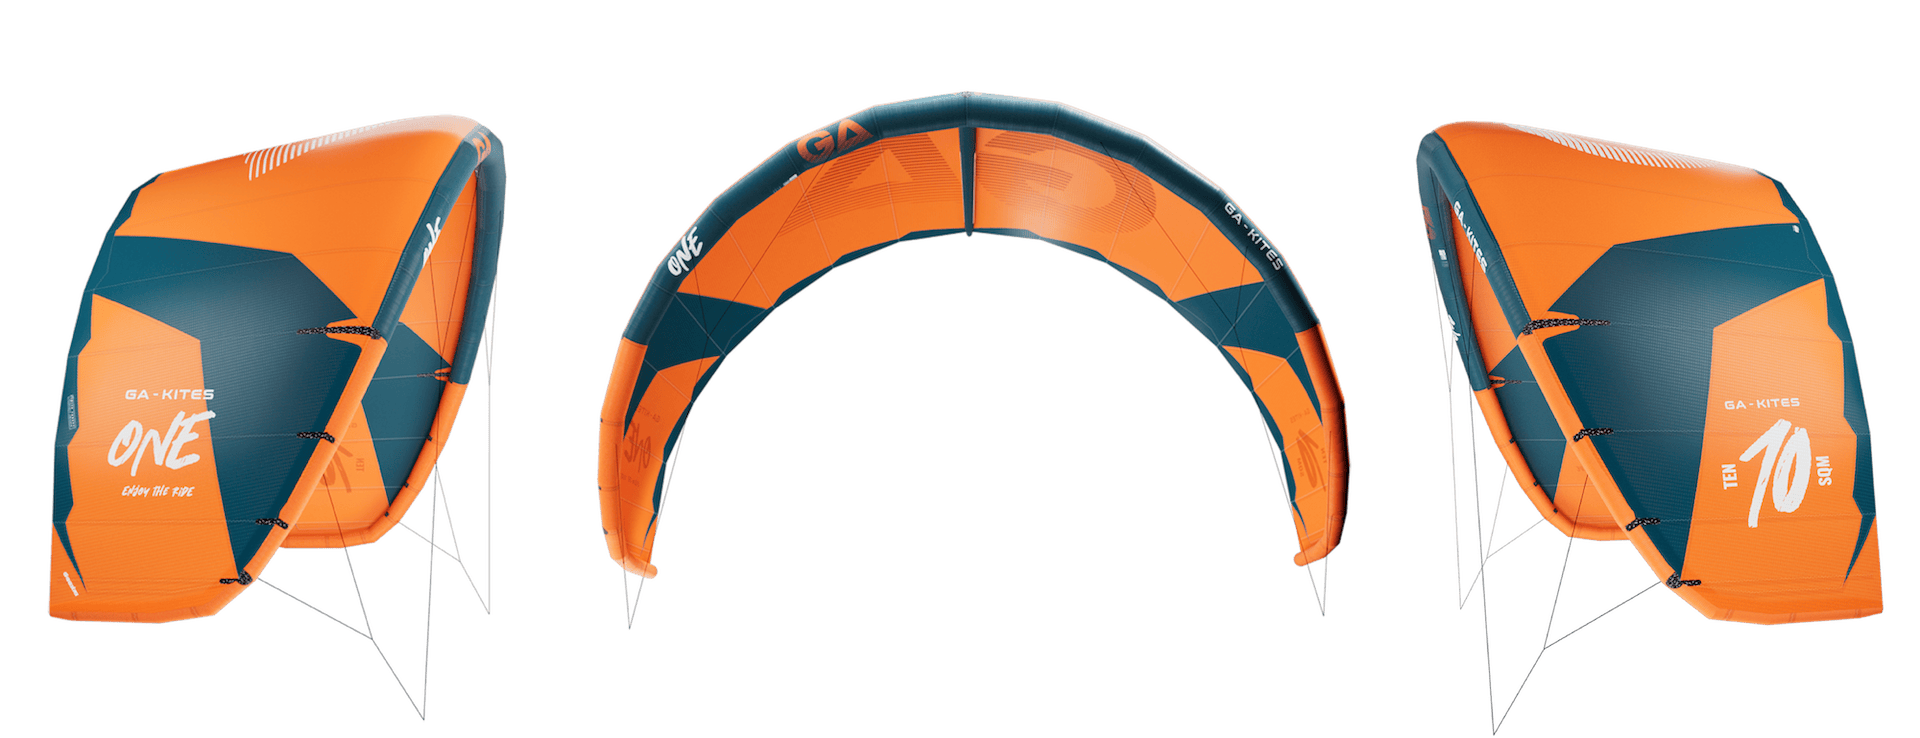 GA Kites, One 2023 kiteboarding, kitesurfing, kite